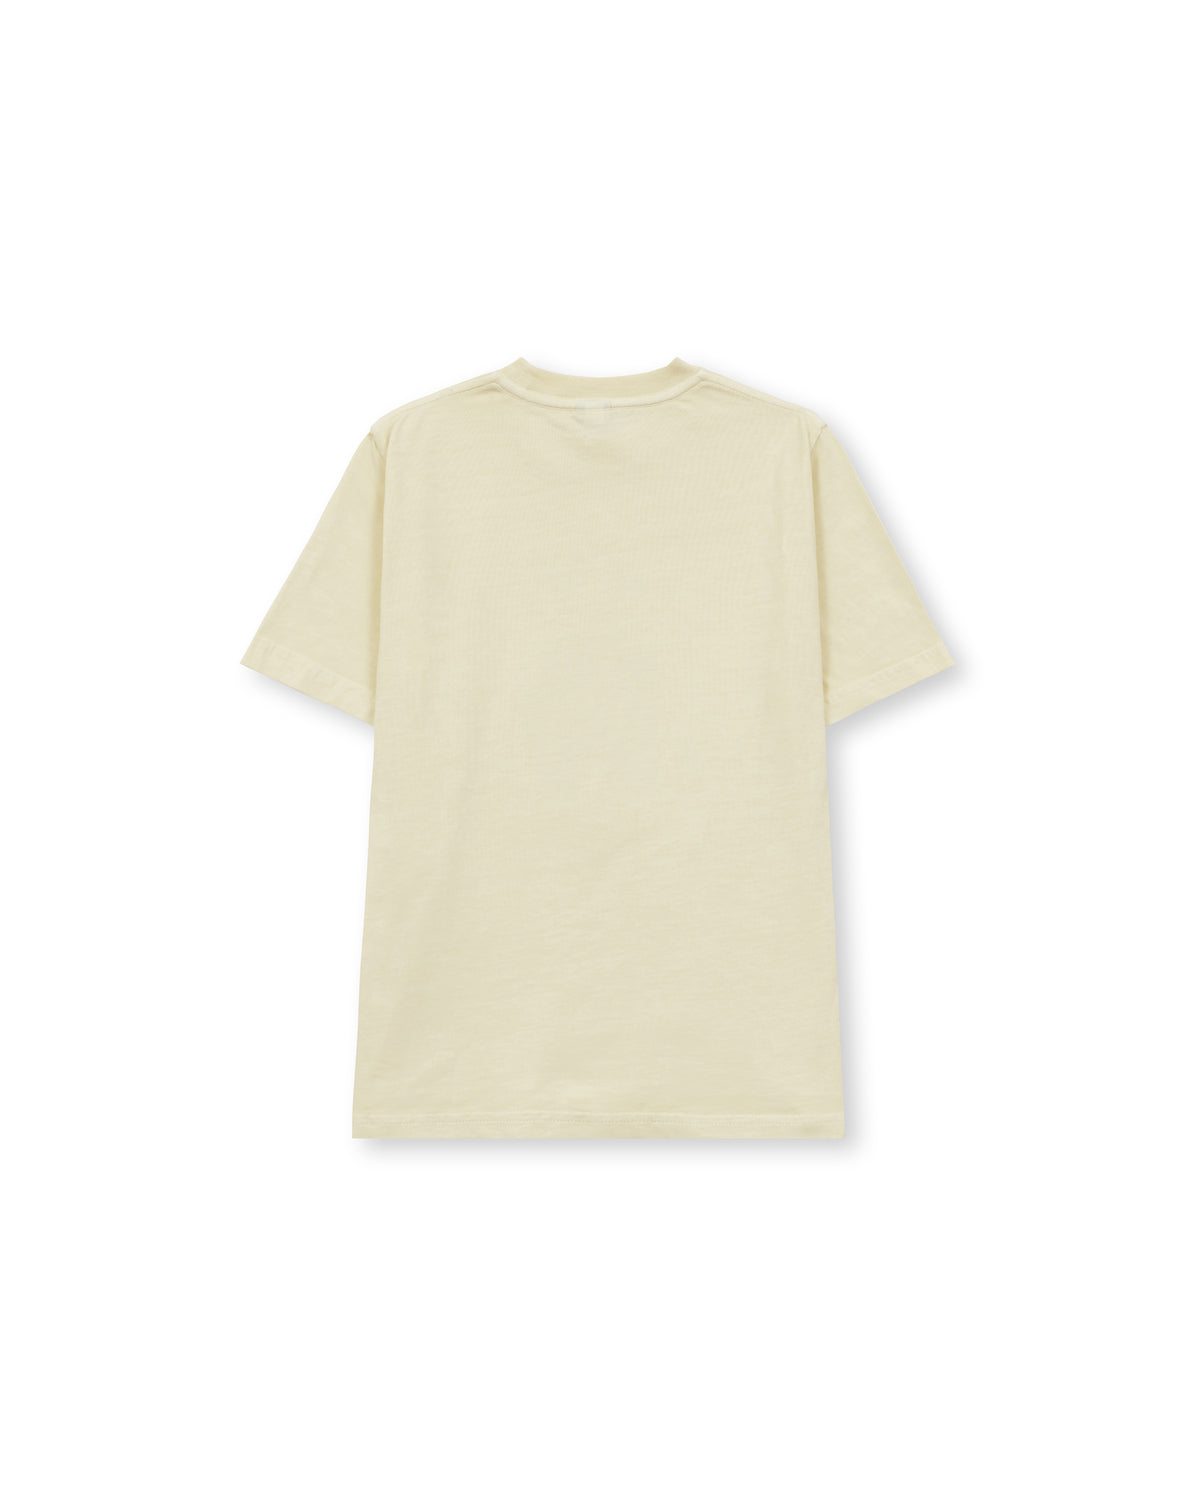 UFO Kids T-Shirt - Cream 2